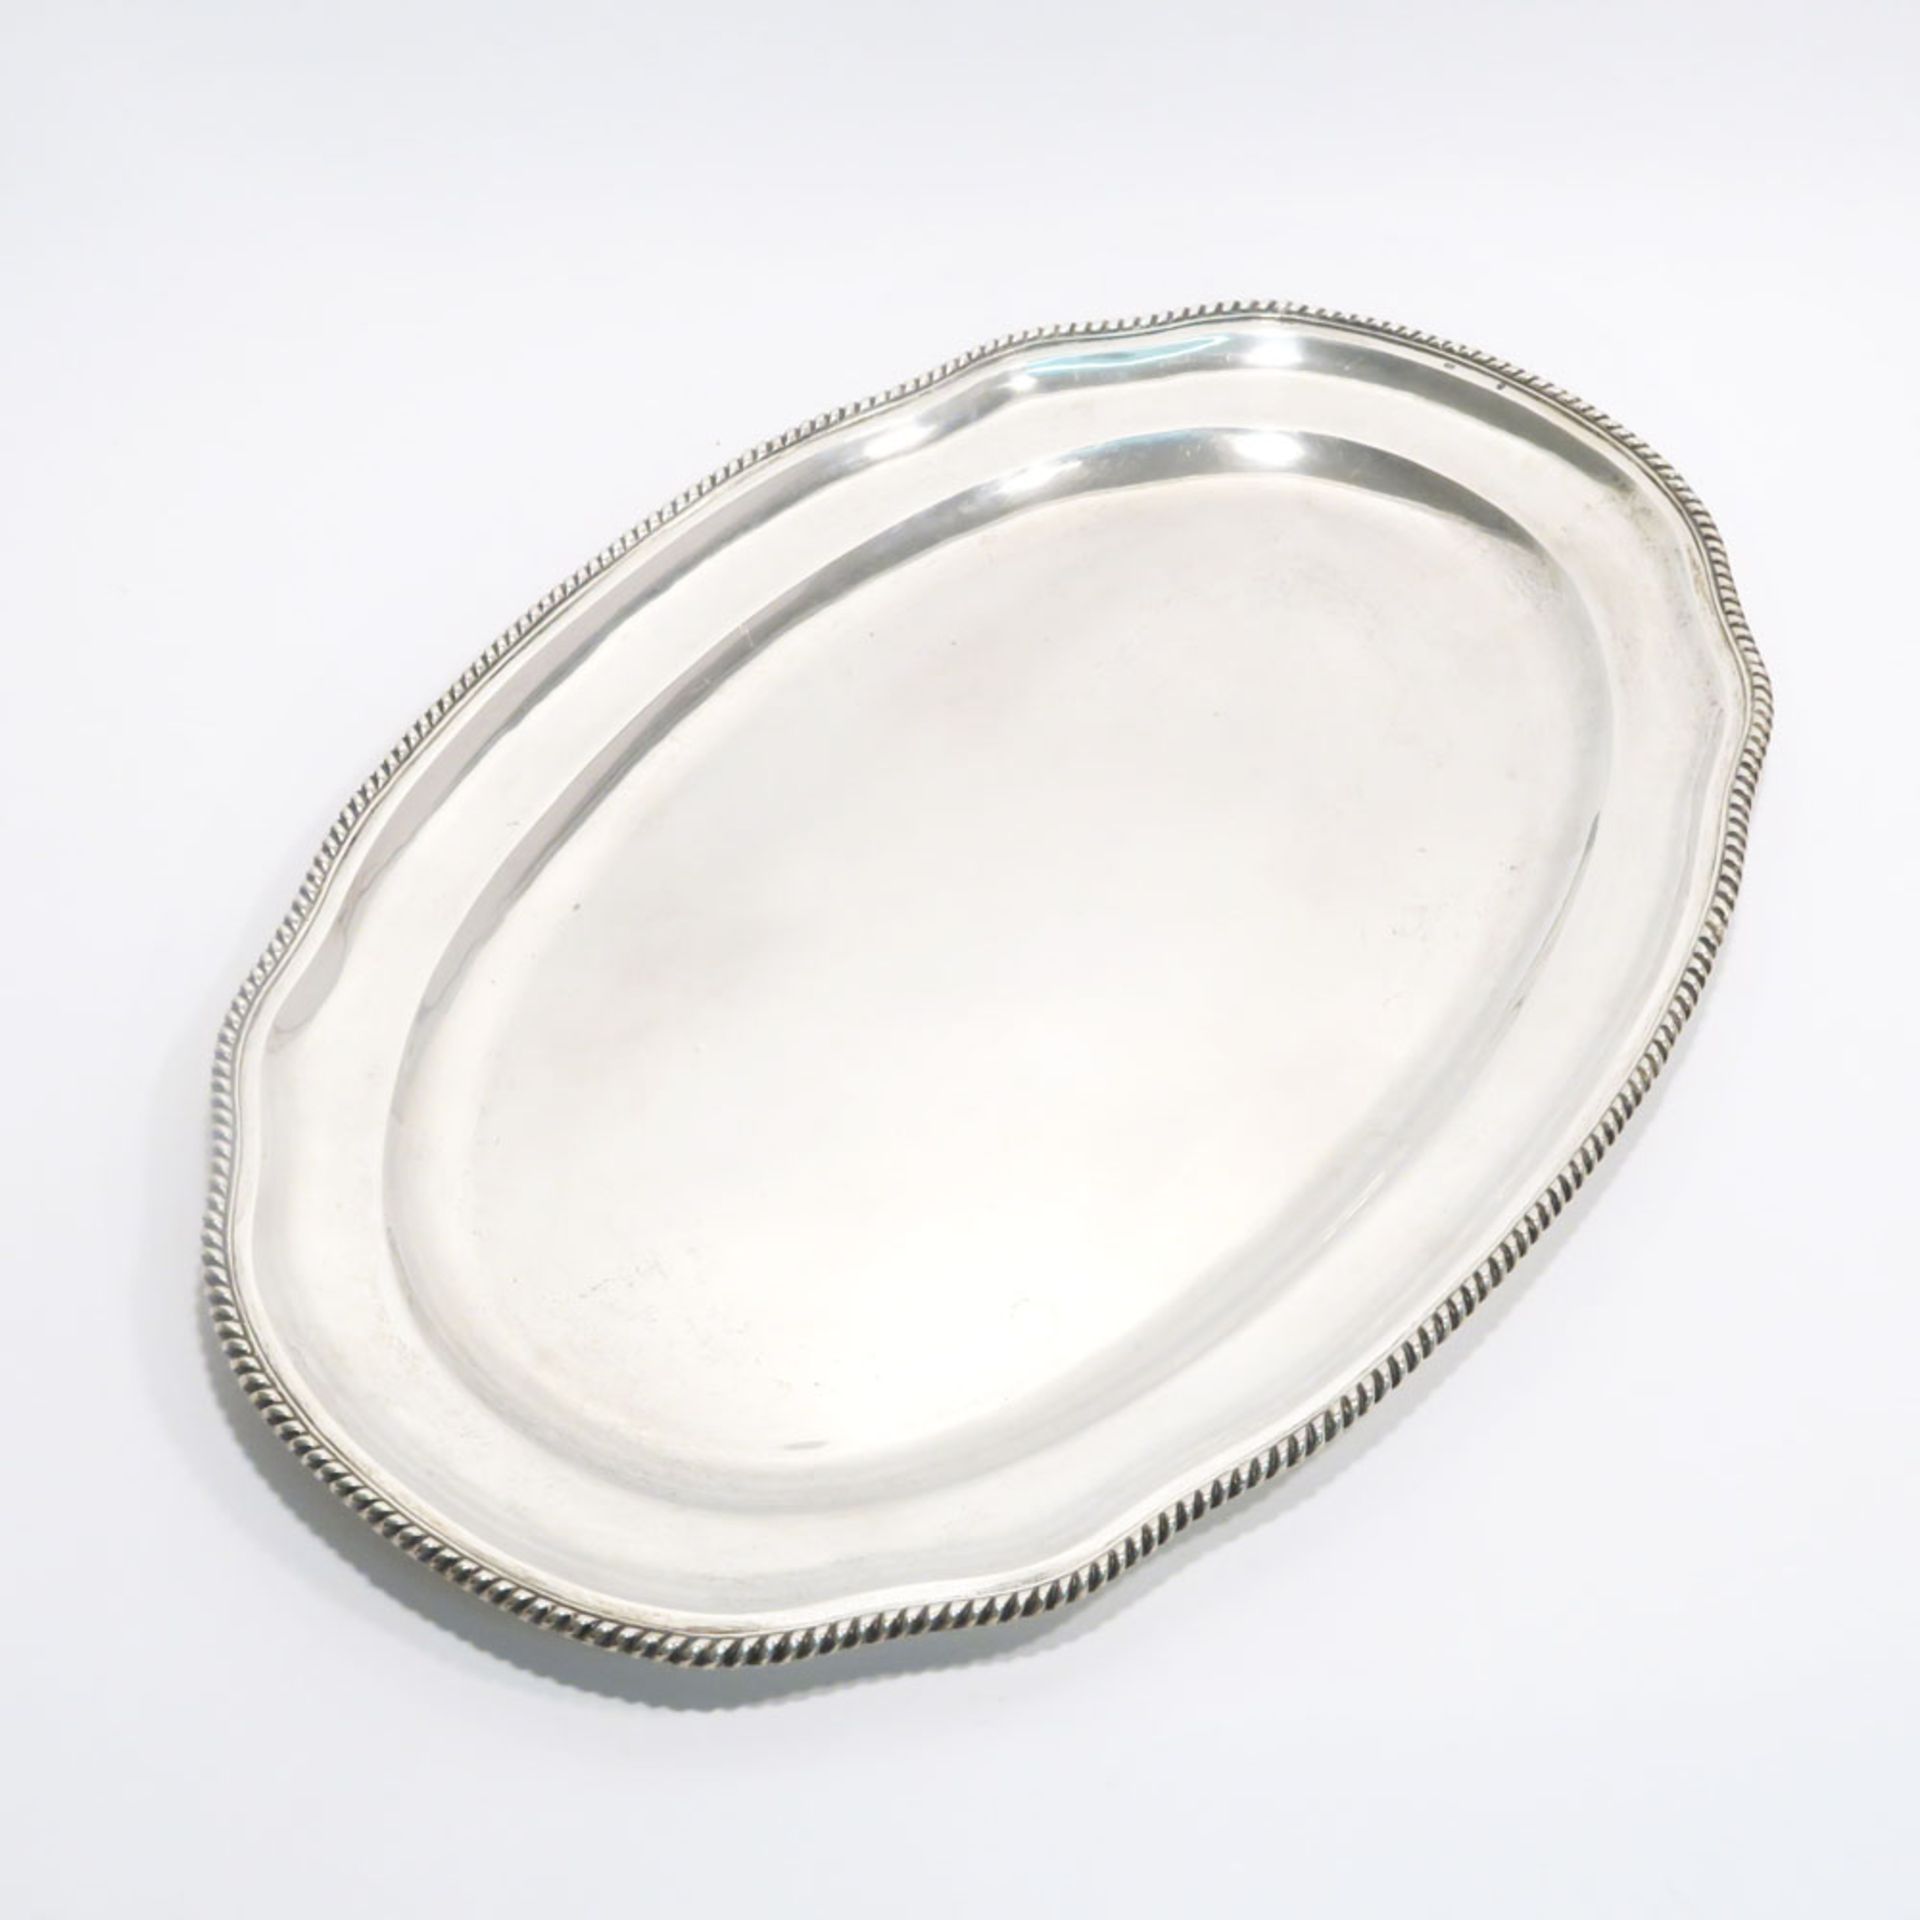 TablettUngarn, 1937 - 1965. Silber. Ovale Form mit leicht geschwungenem Rand mit Kordeldekor.